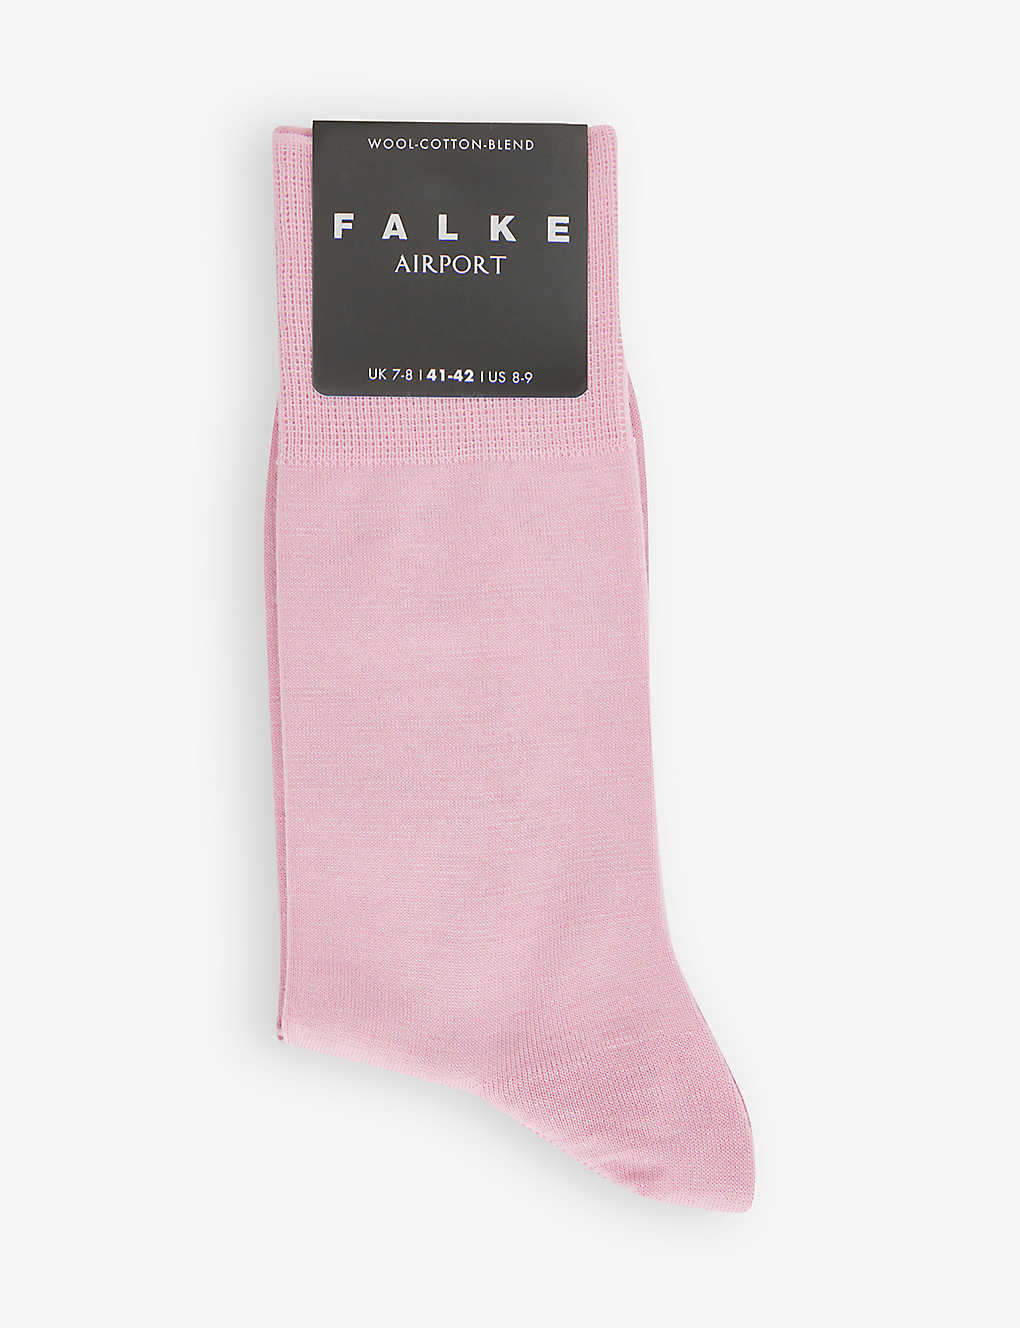 Falke Airport Wool Blend Melange Socks In Pink